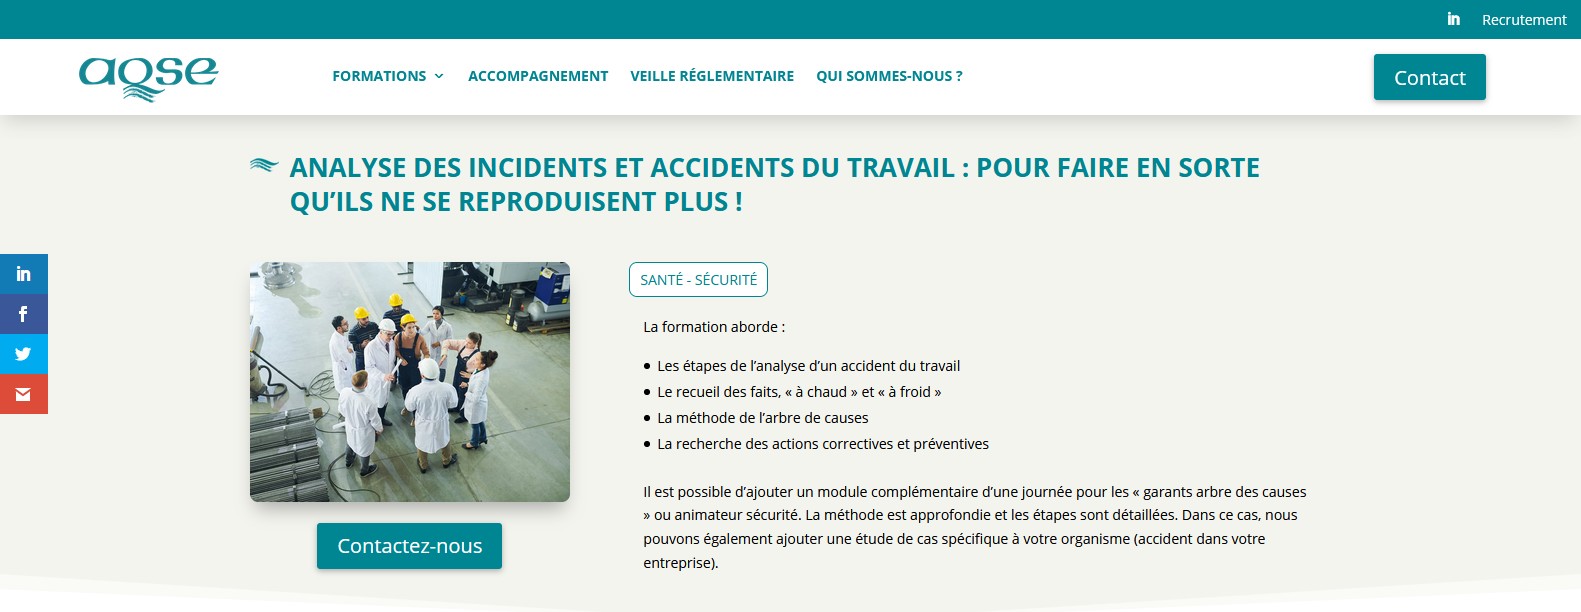 AQSE-france.fr Formation analyse des accidents du travail mthode de l'arbre des causes